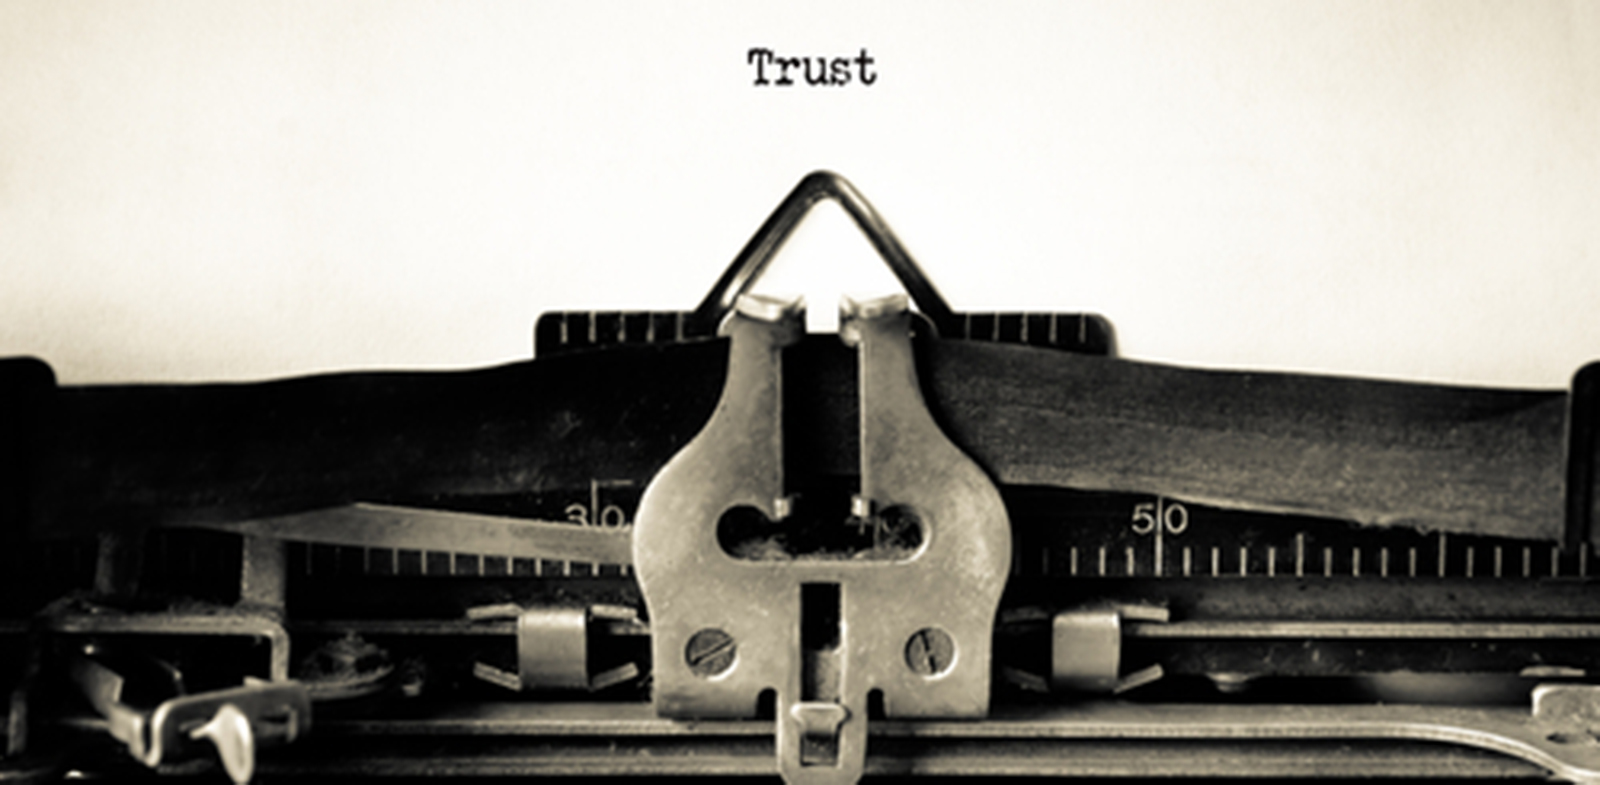 Gaining Client Trust